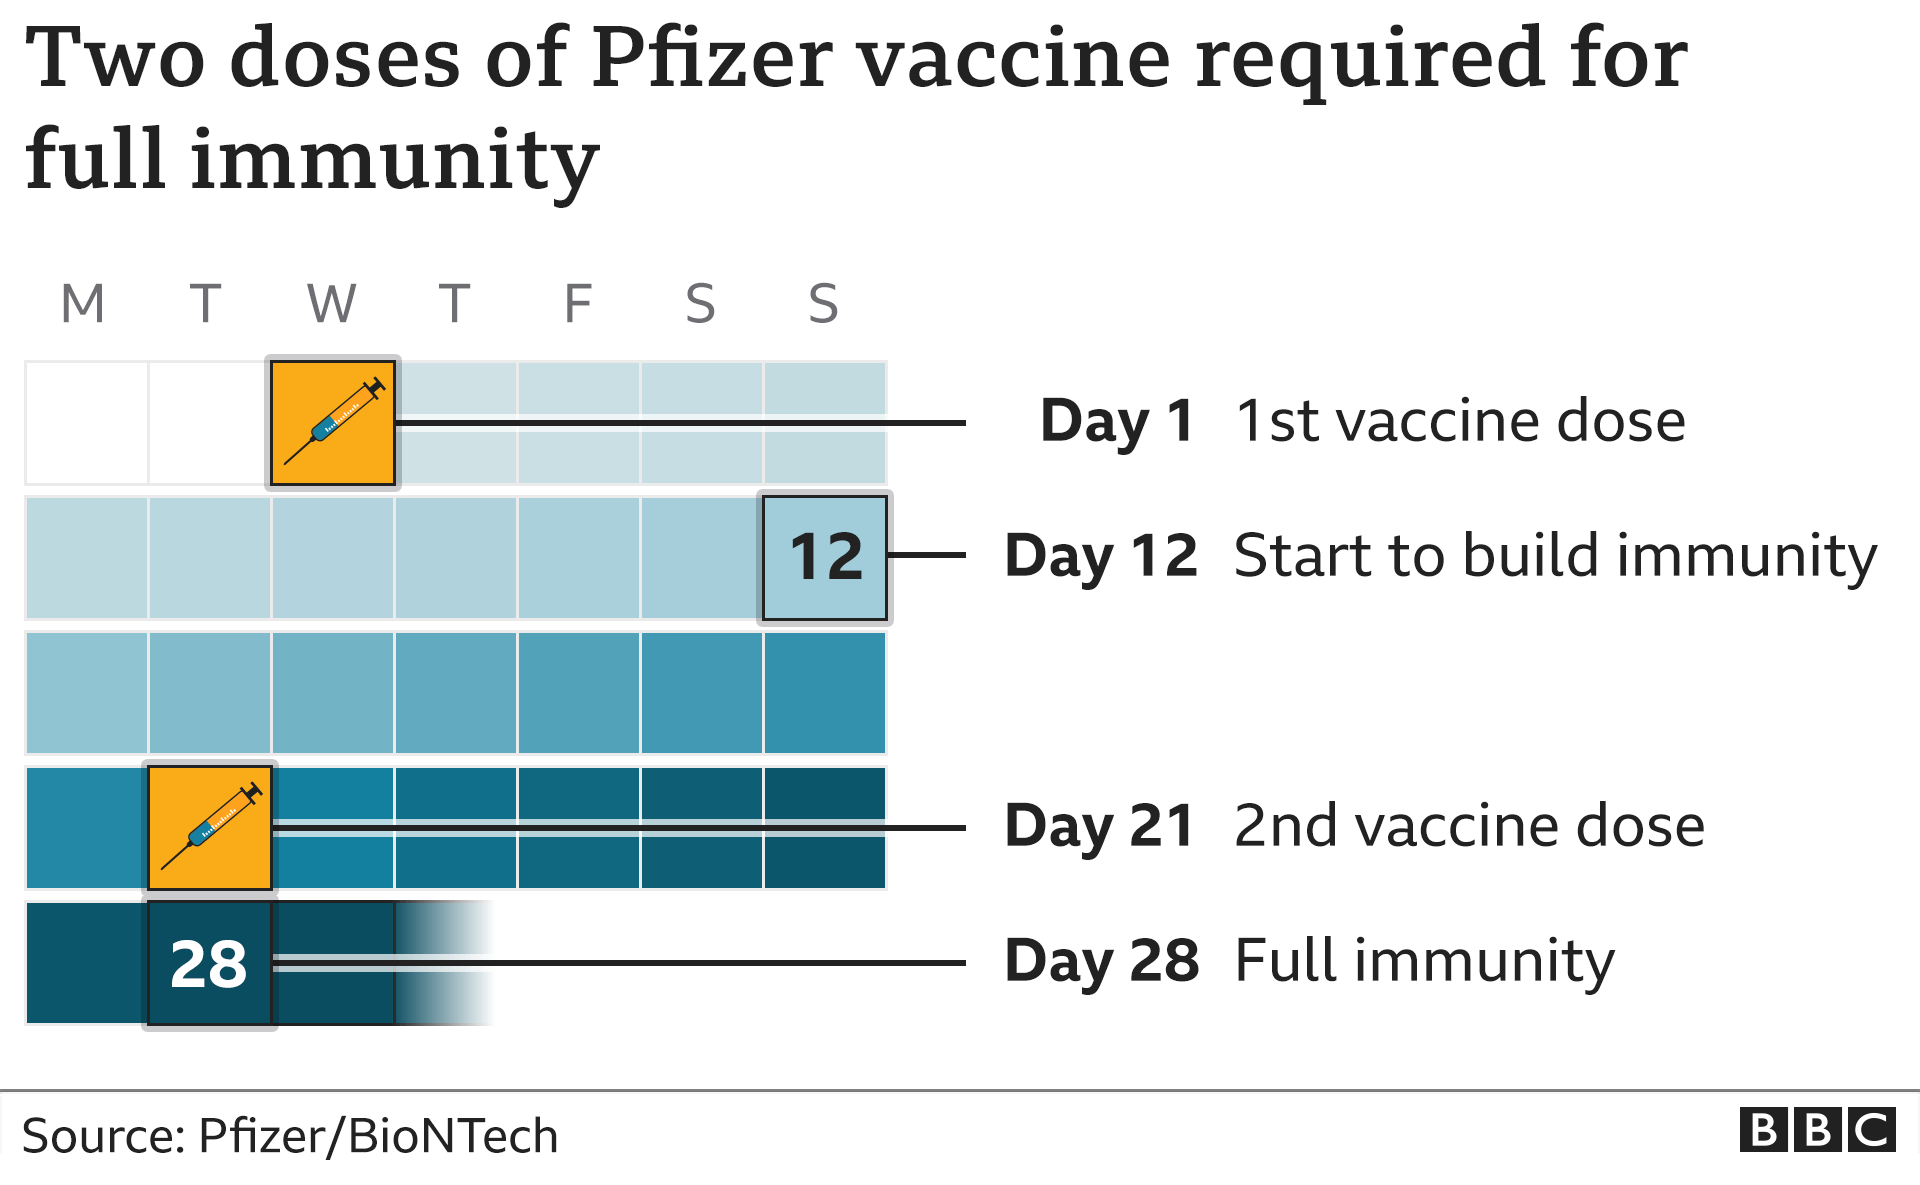 Календарь, показывающий время введения двух доз вакцины Pfizer